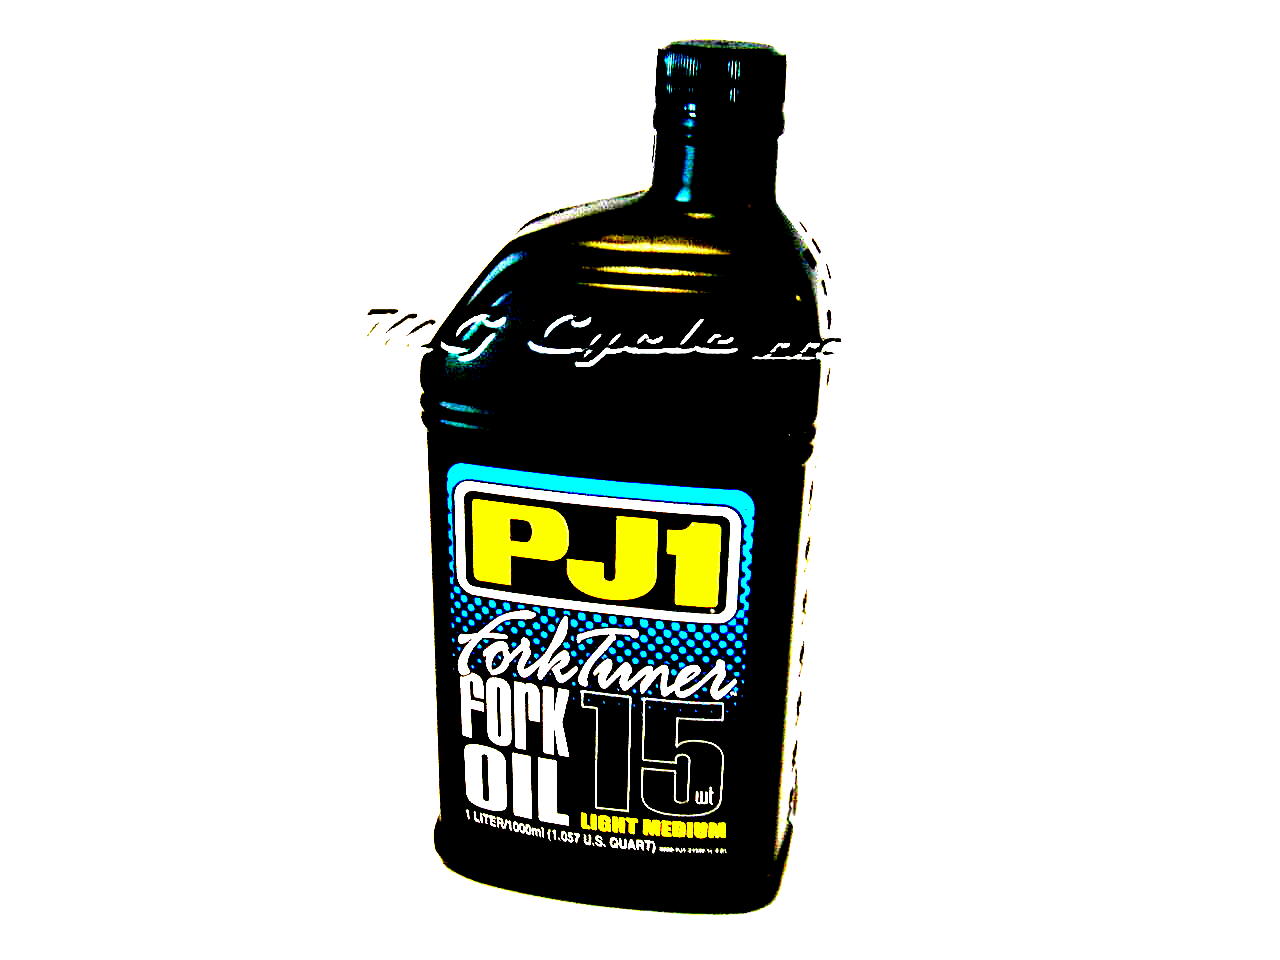 PJ1 Fork Tuner fork oil 15W light-medium, 1 liter bottle